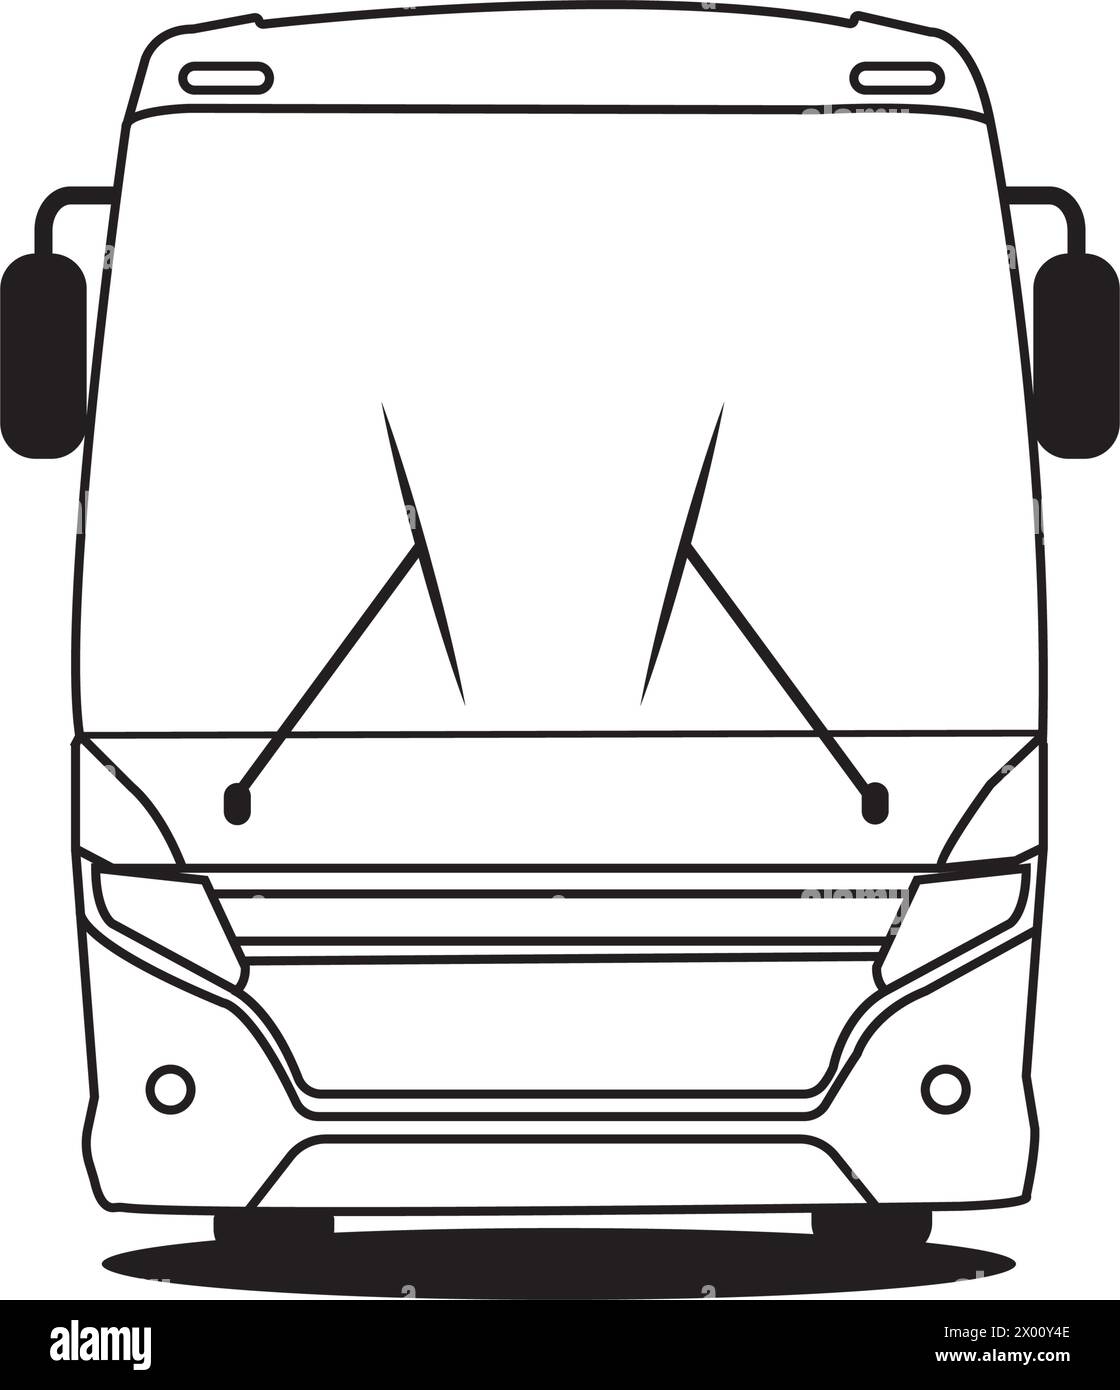 disegno del logo dell'illustrazione vettoriale dell'icona degli autobus Illustrazione Vettoriale